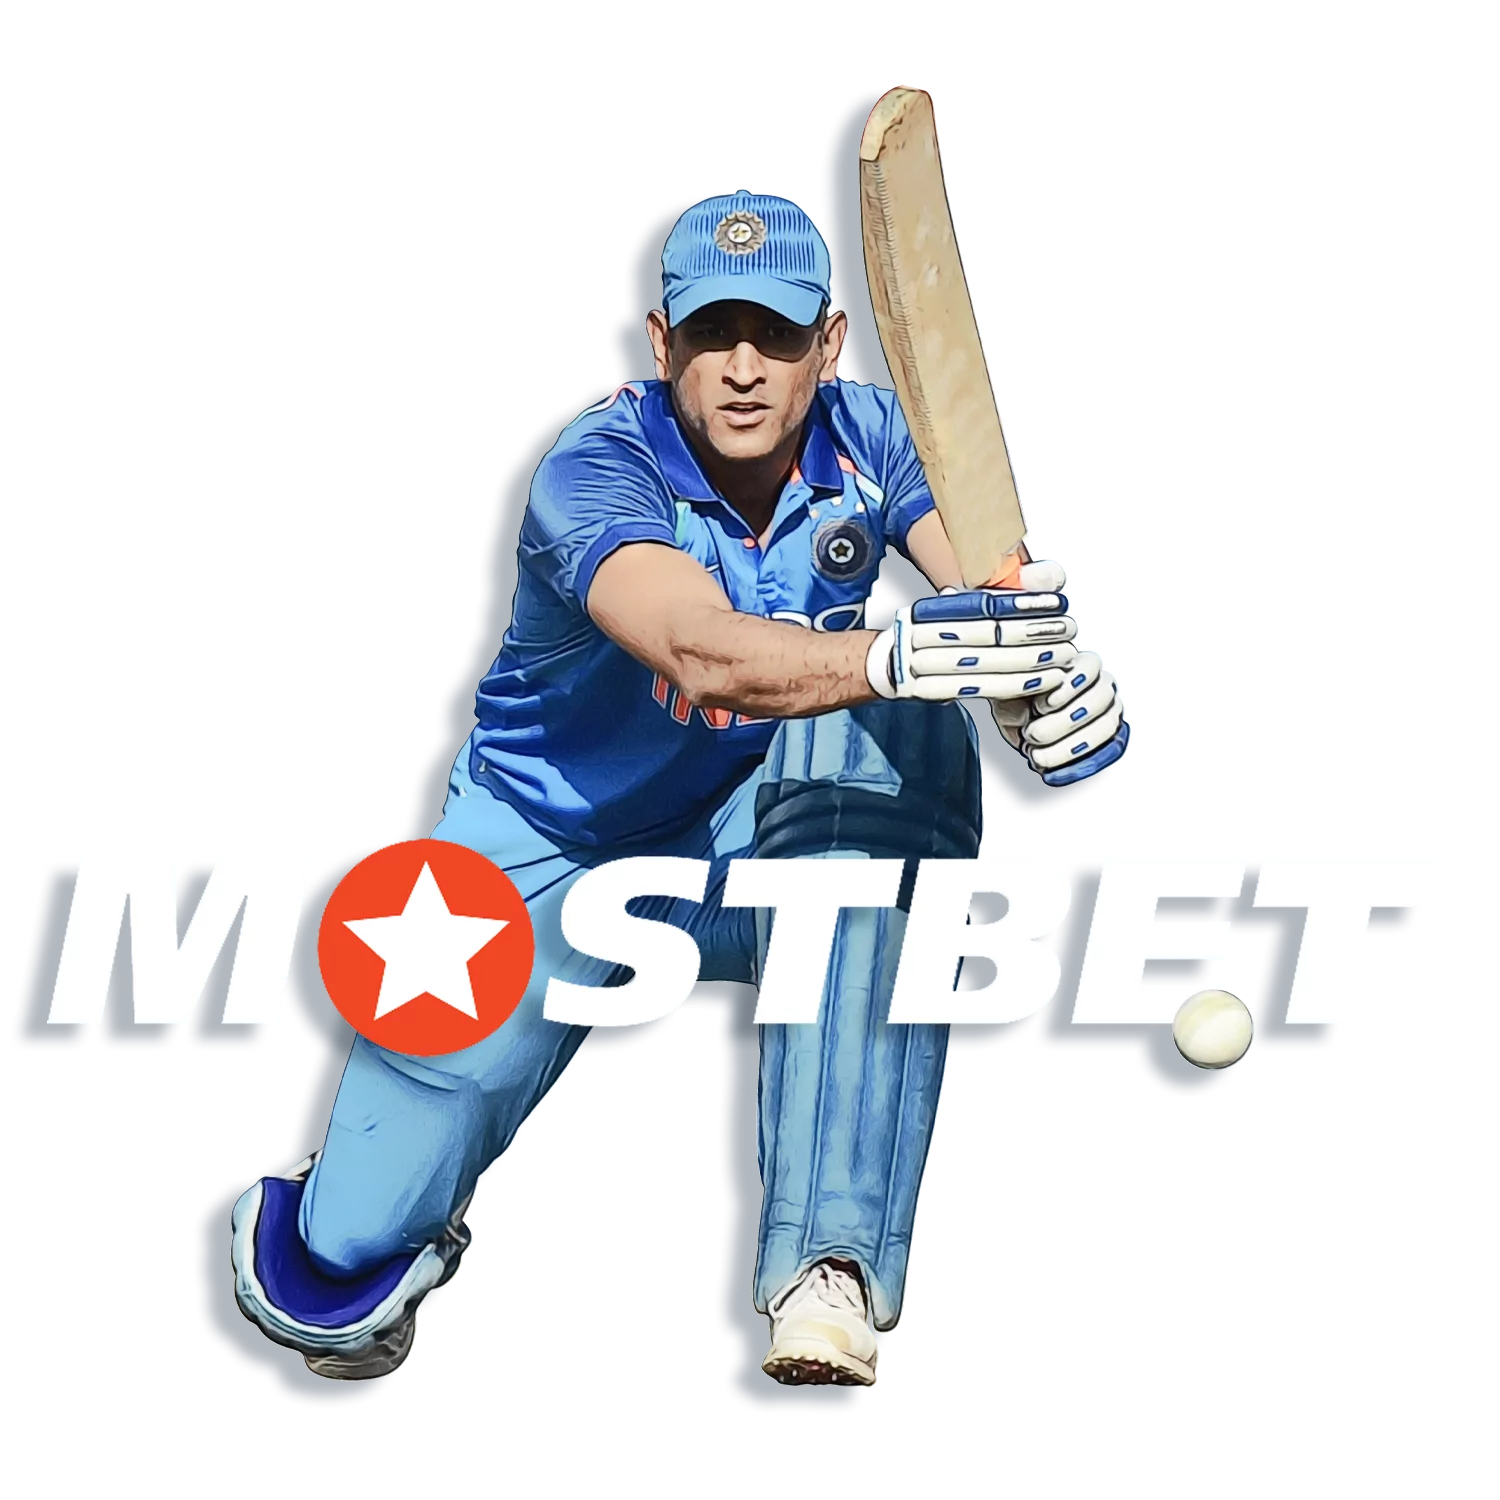 सबसे अच्छी कंपनी-25,000 रुपये तक के इनाम के साथ क्रिकेट पर सट्टेबाजी शुरू करें ।